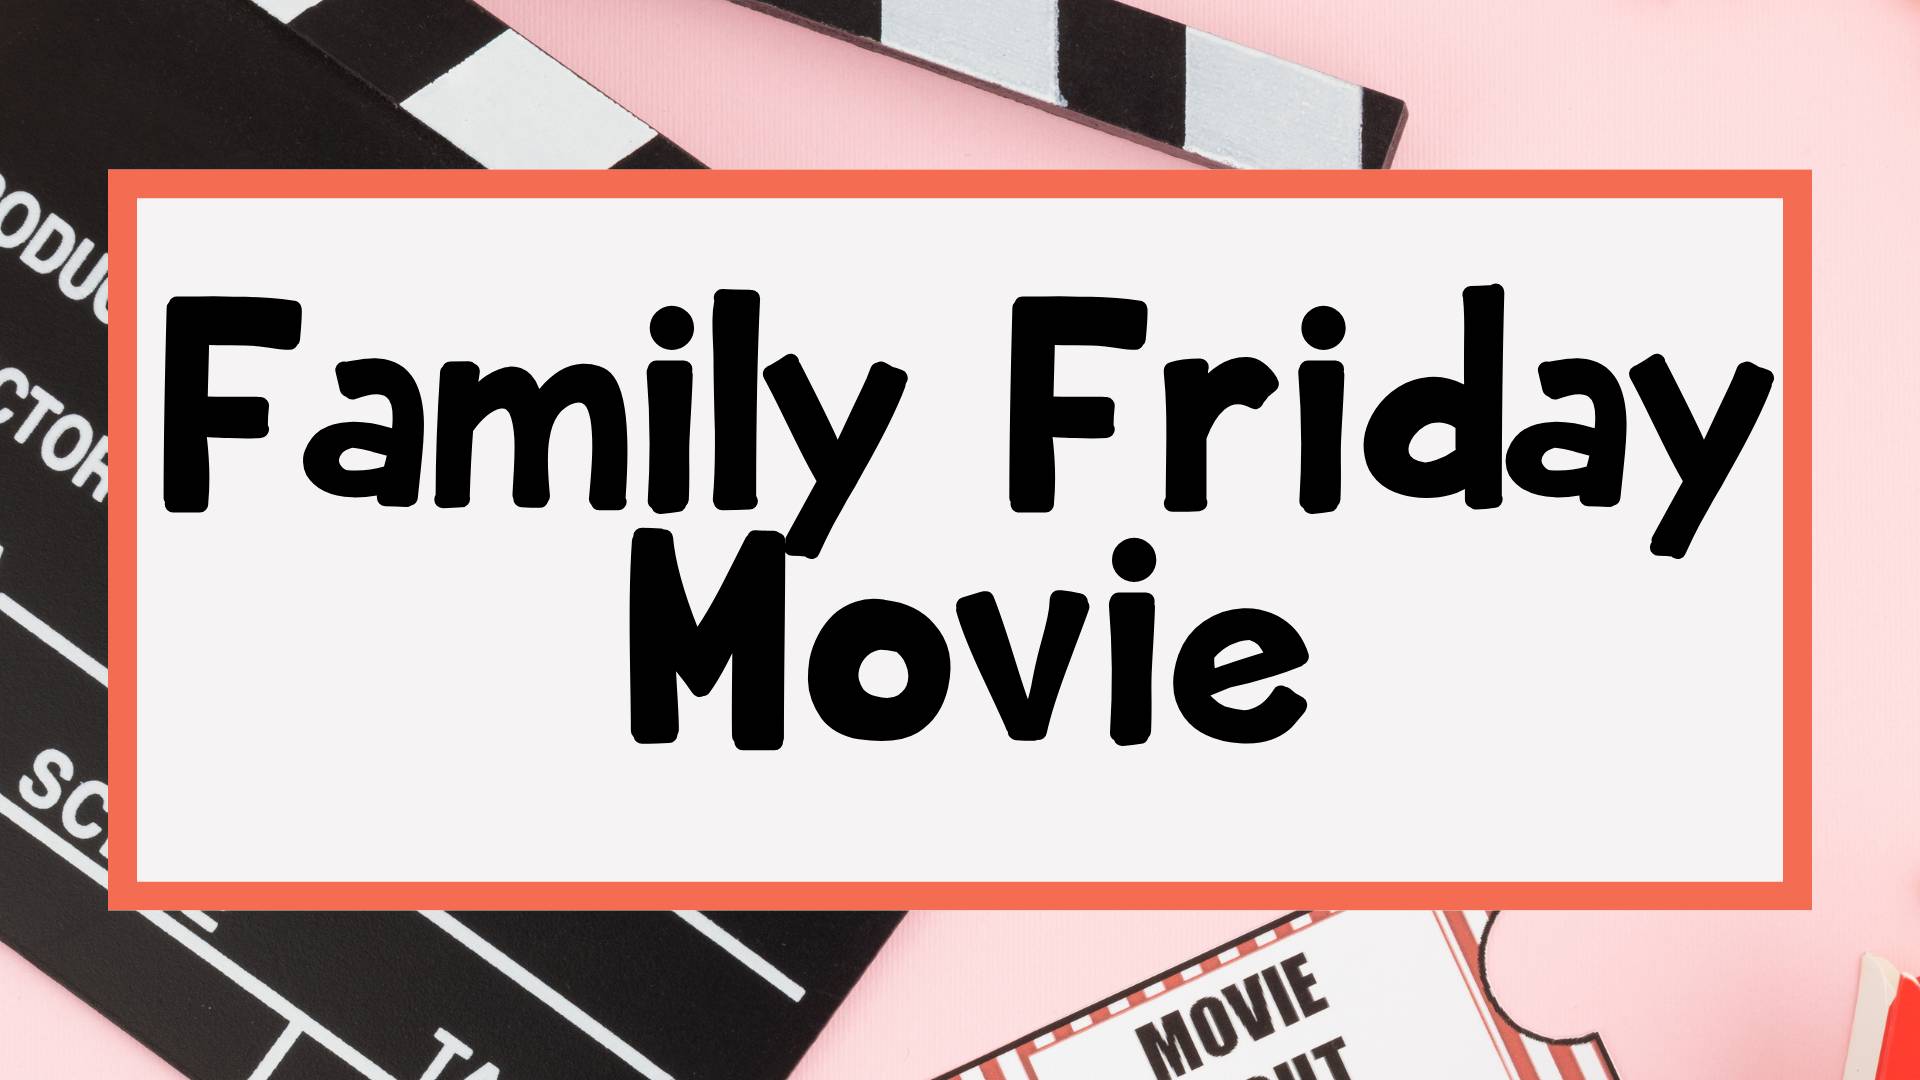 Family Friday Movie